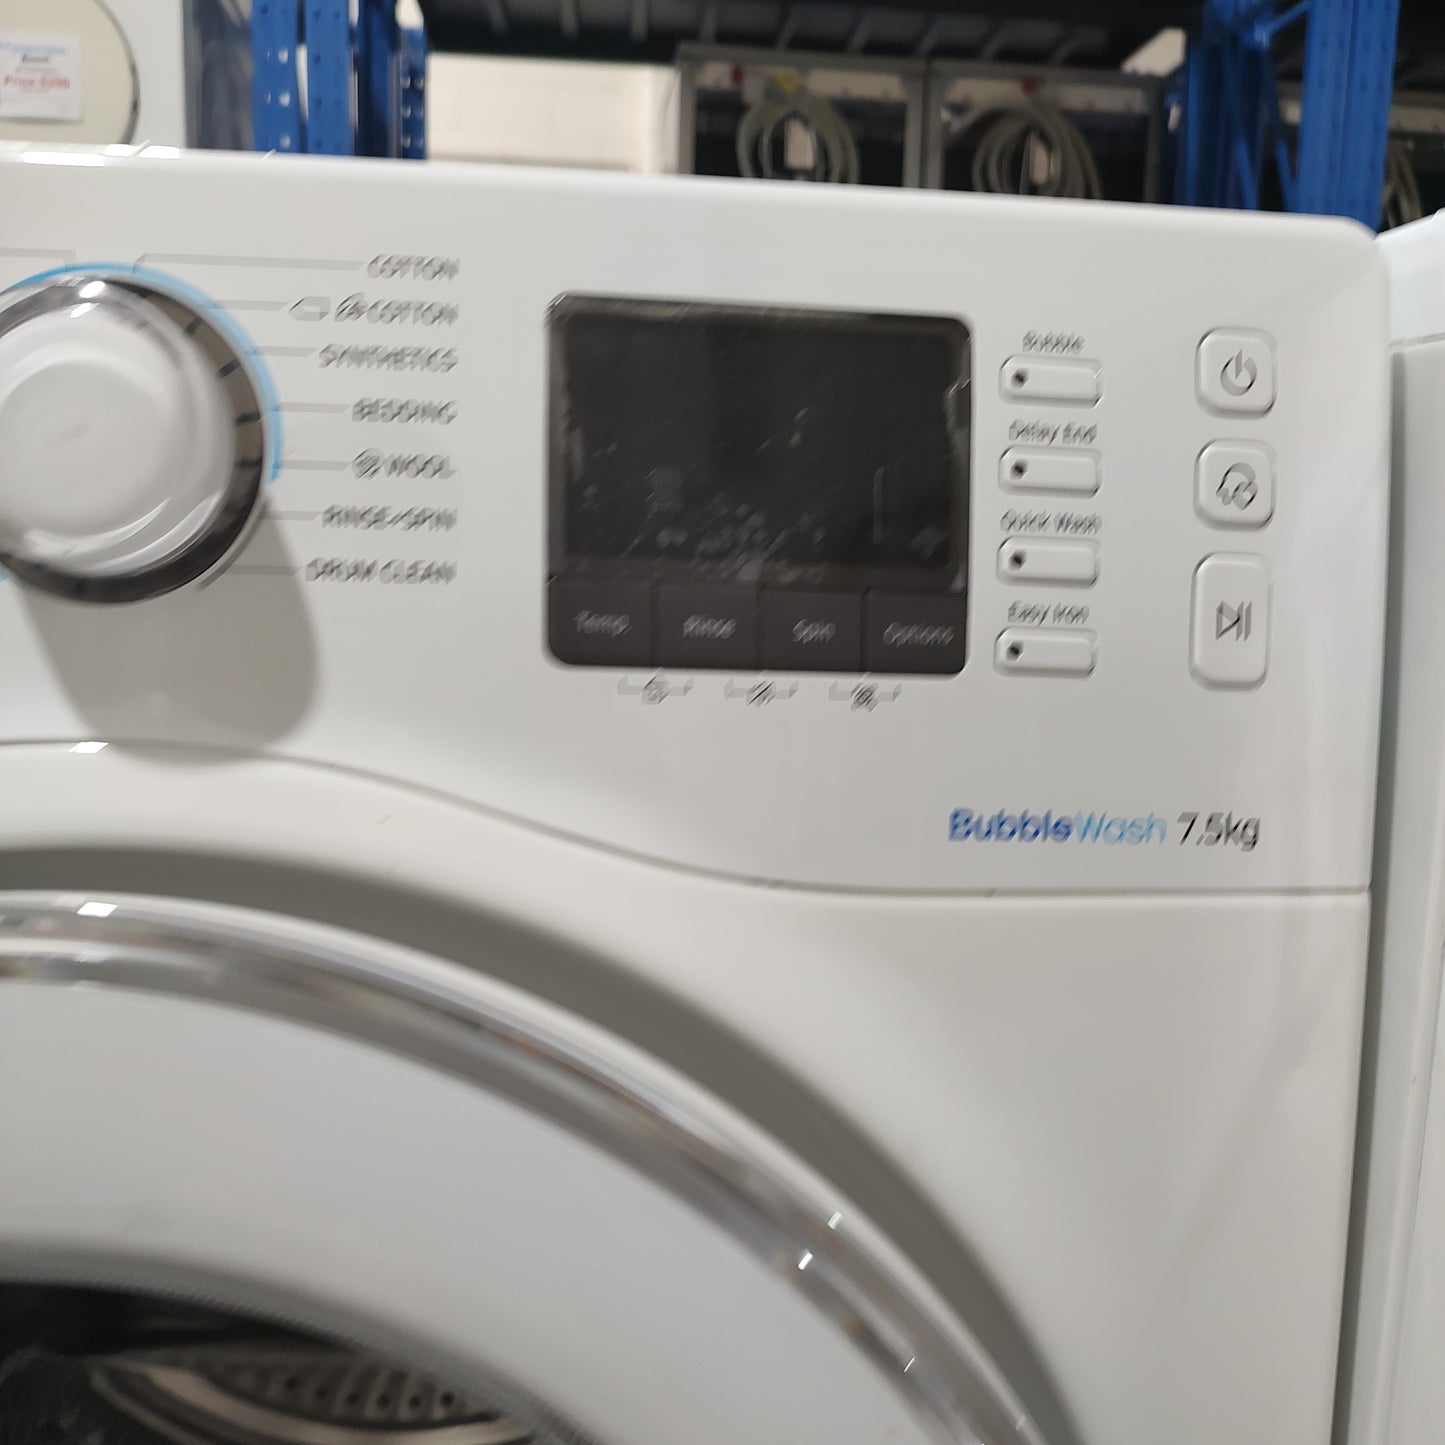 Samsung WW75H5400EW 7.5kg Front Load Washing Machine